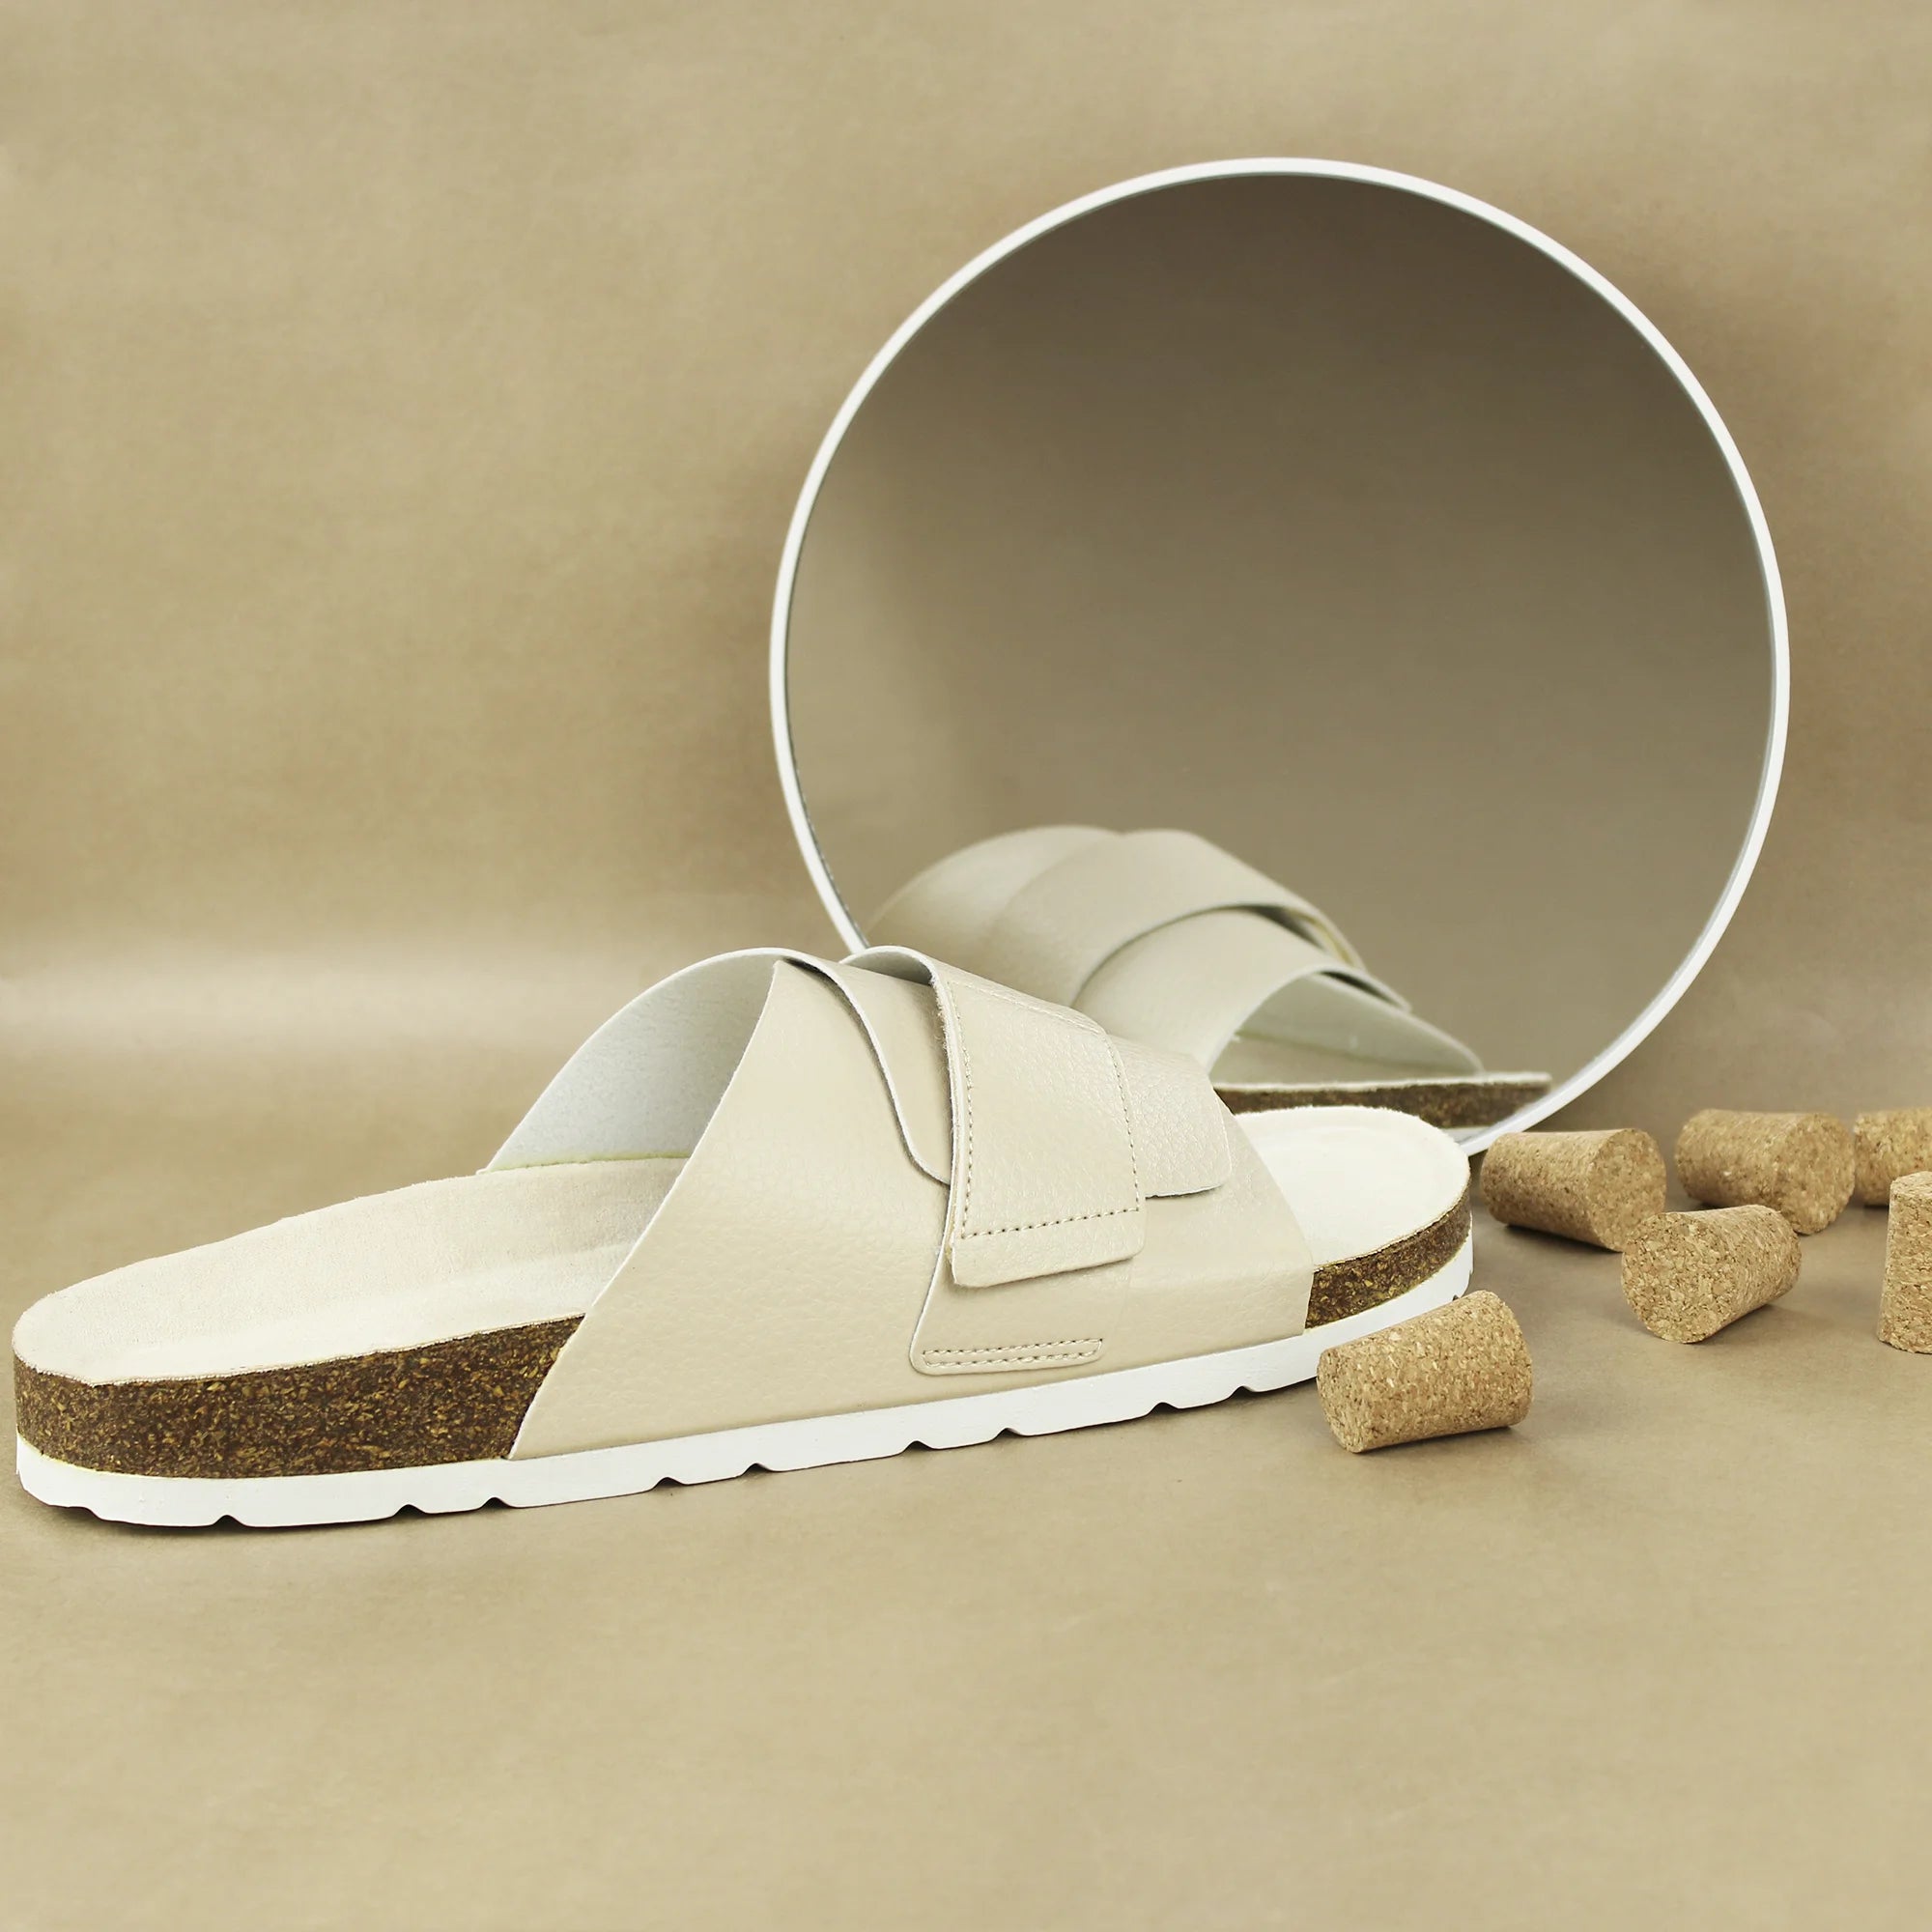 Men's cork sandals in beige with comfortable adjustable straps